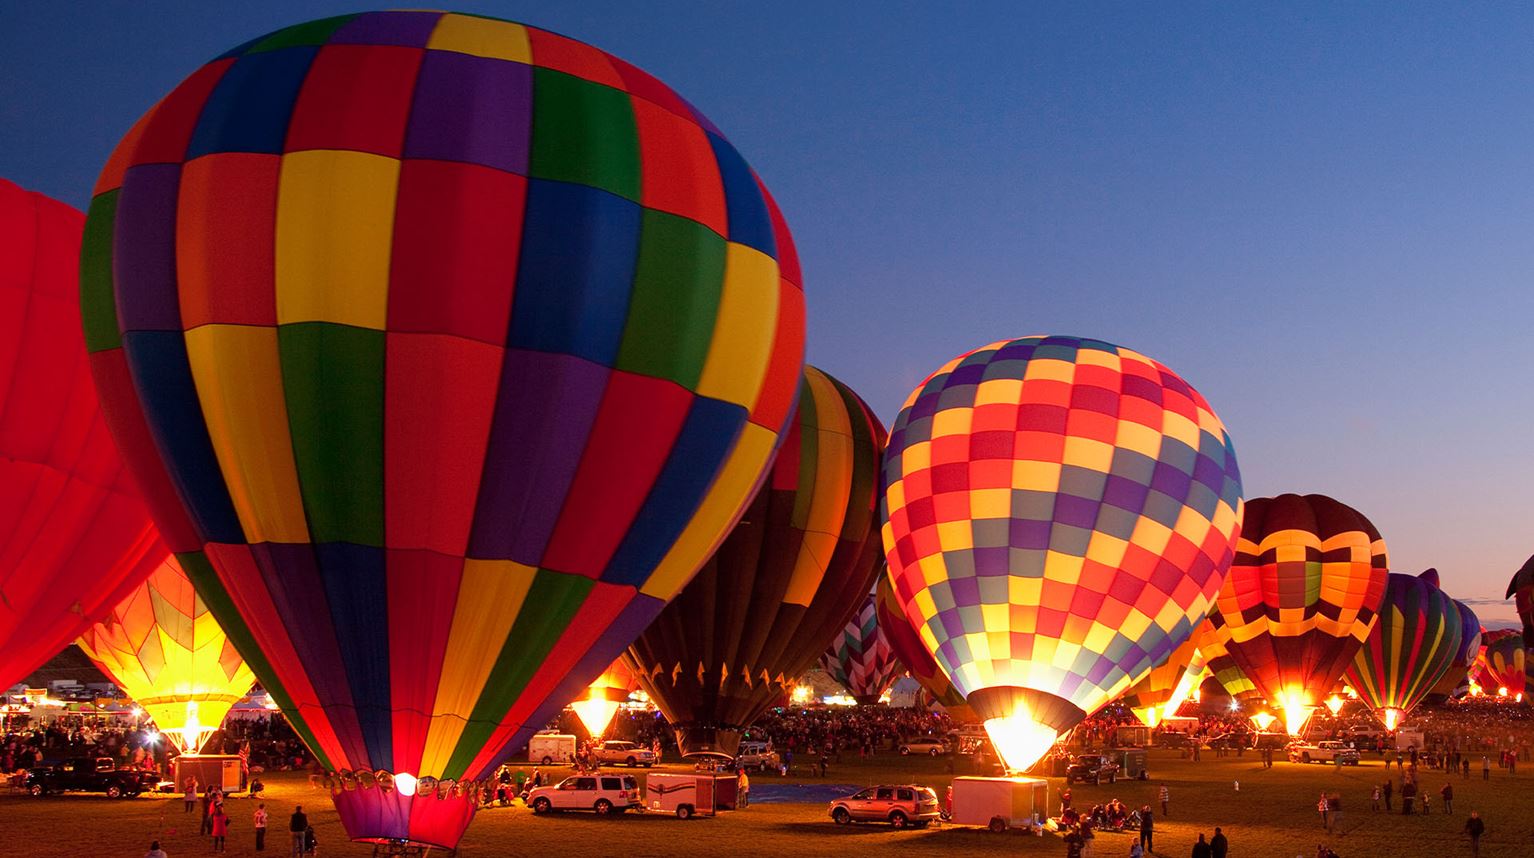 Hot air balloons in Albuquerque, New Mexico 